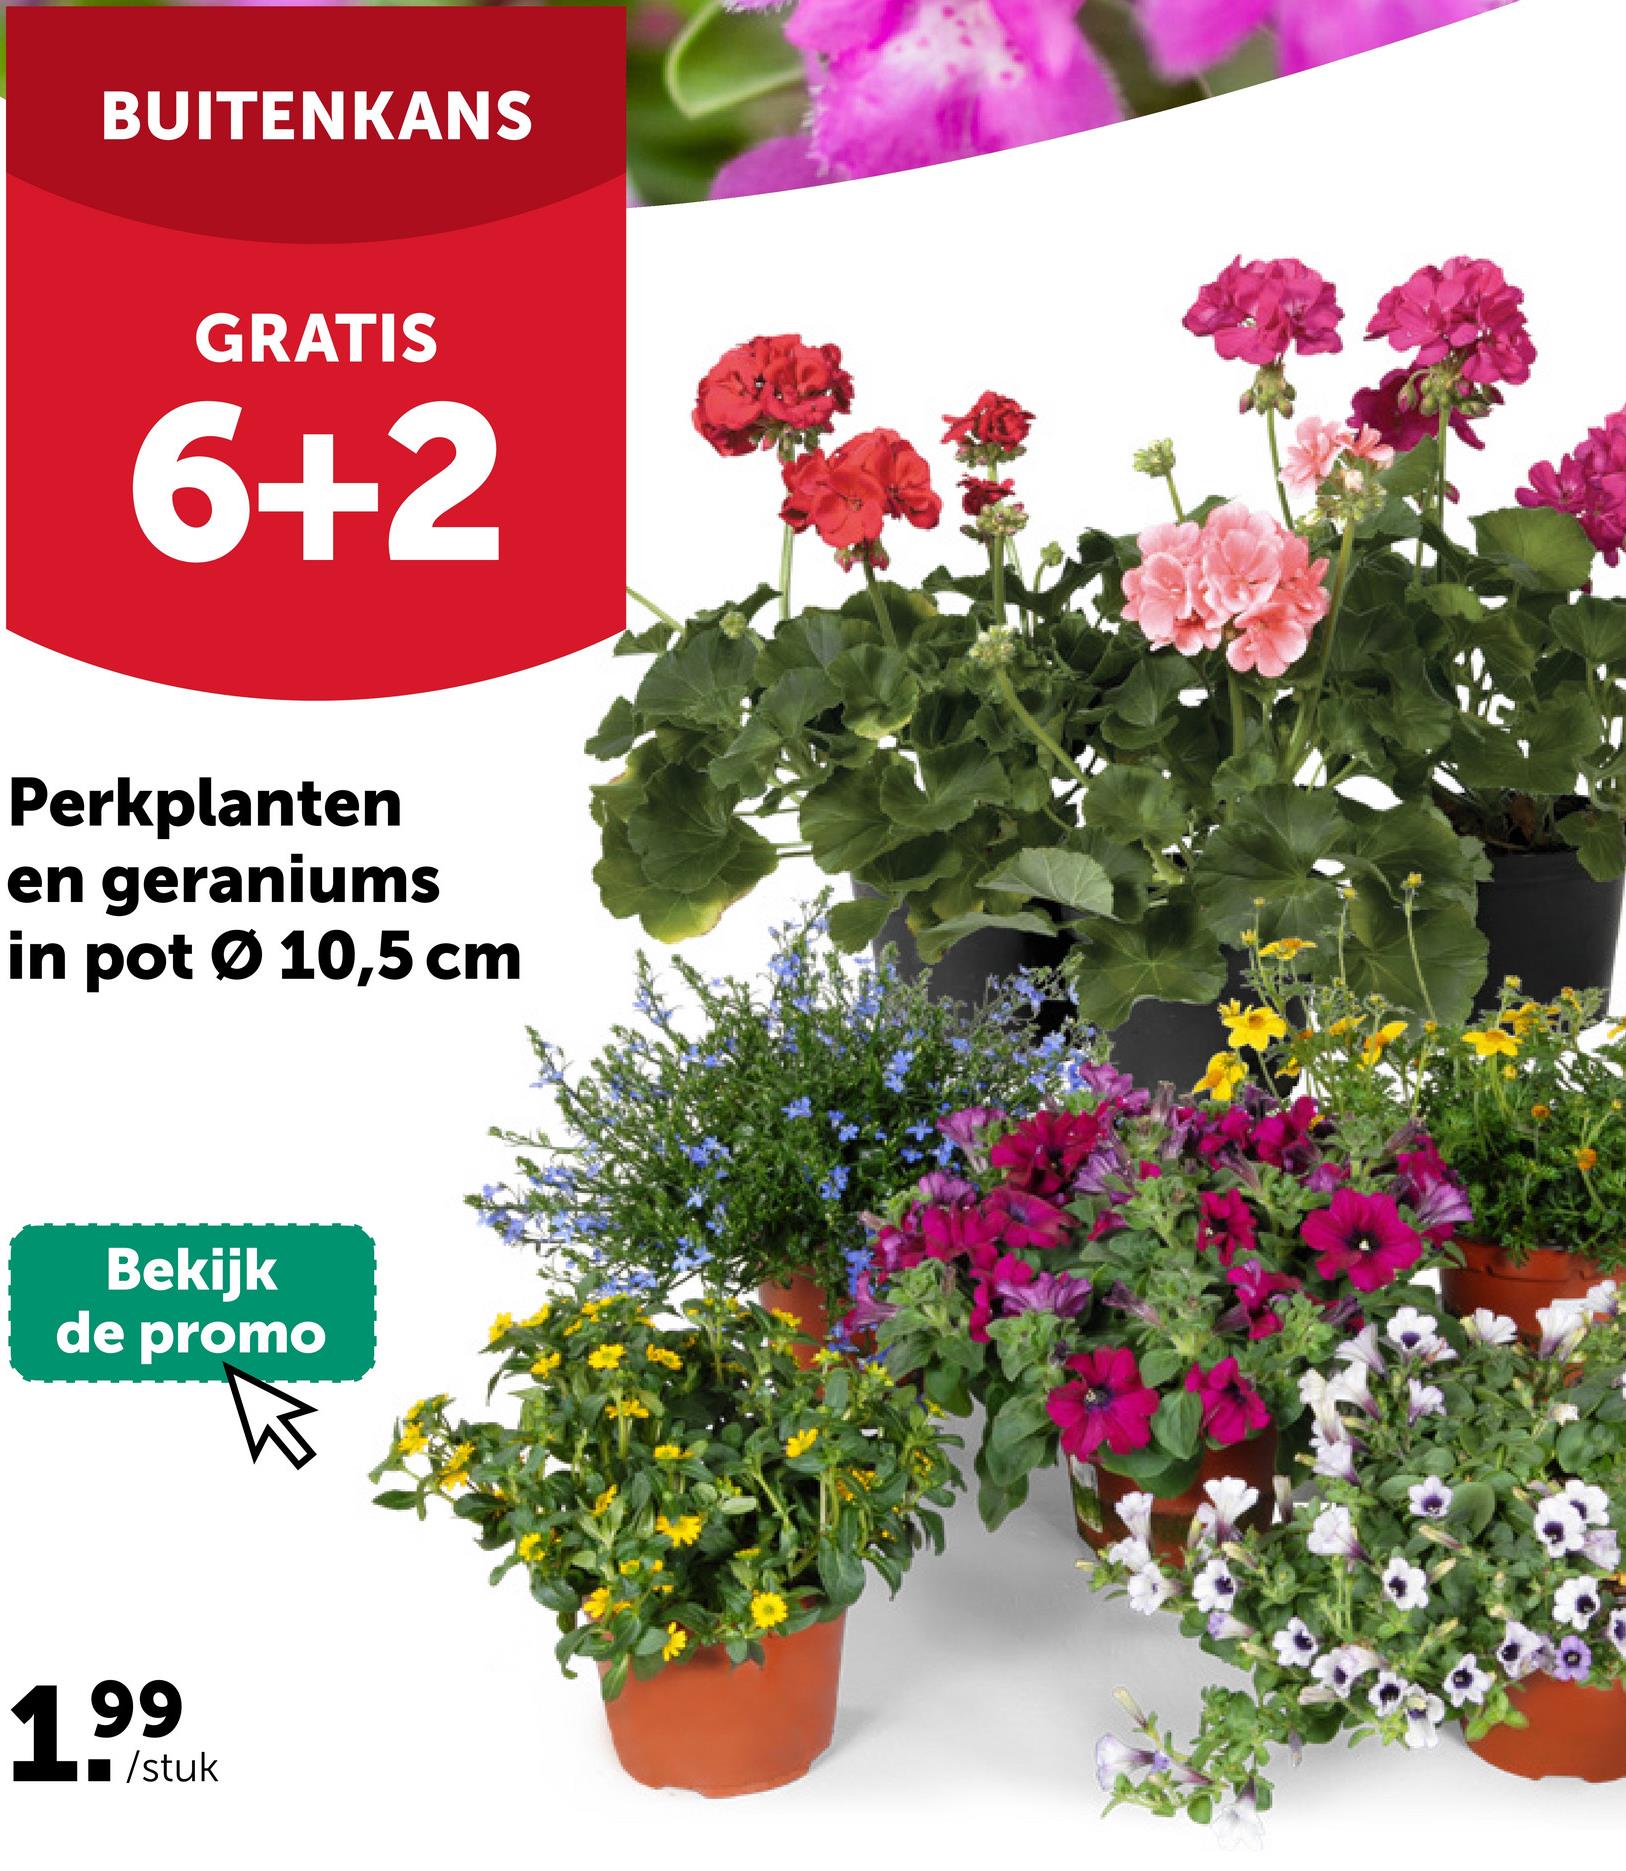 BUITENKANS
GRATIS
6+2
Perkplanten
en geraniums
in pot Ø 10,5 cm
Bekijk
de promo
1999
/stuk